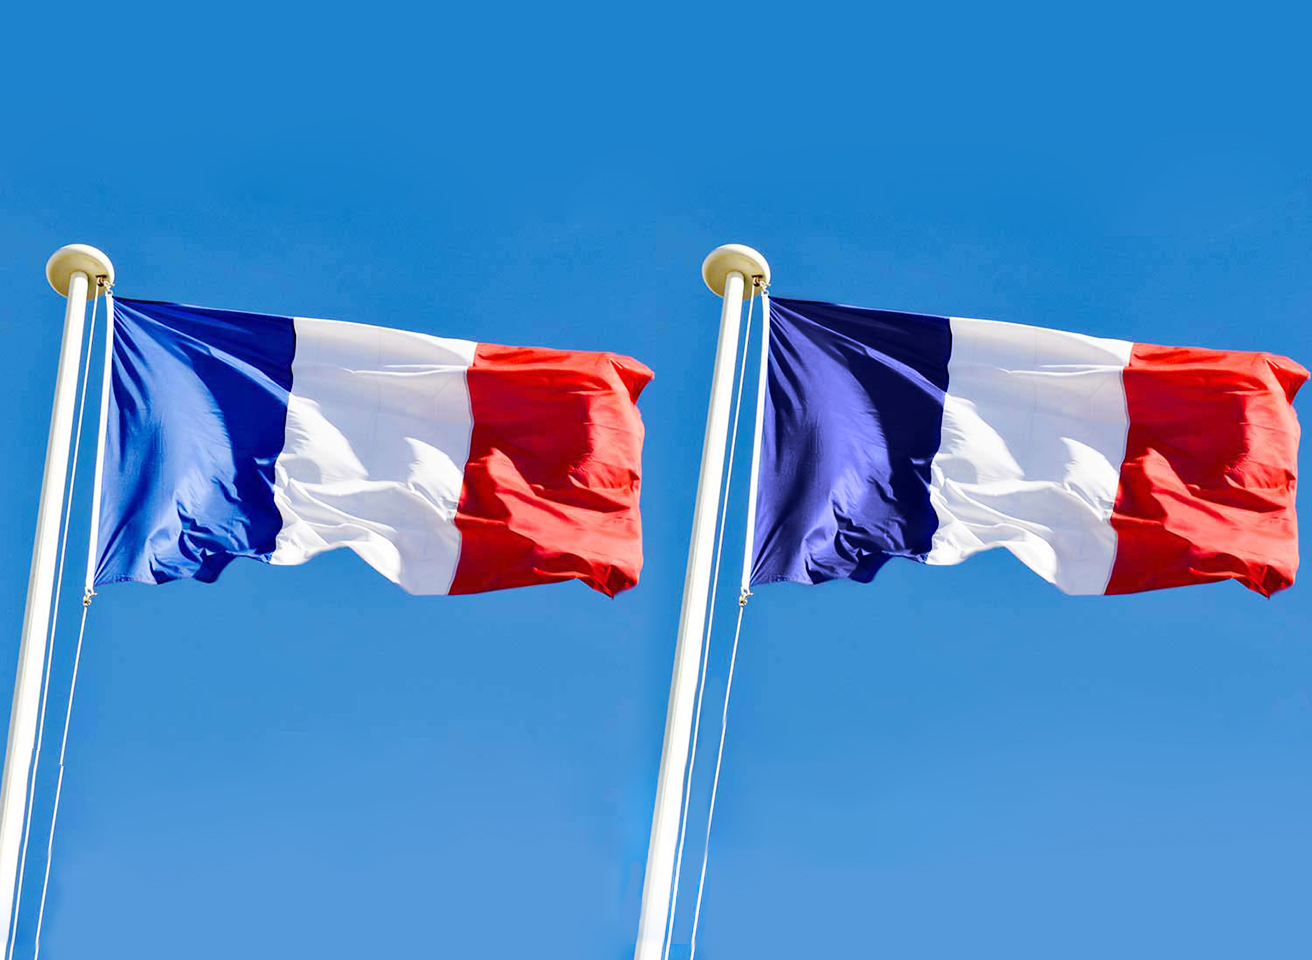 Changement de couleur du drapeau français, ce qu'en pensent les